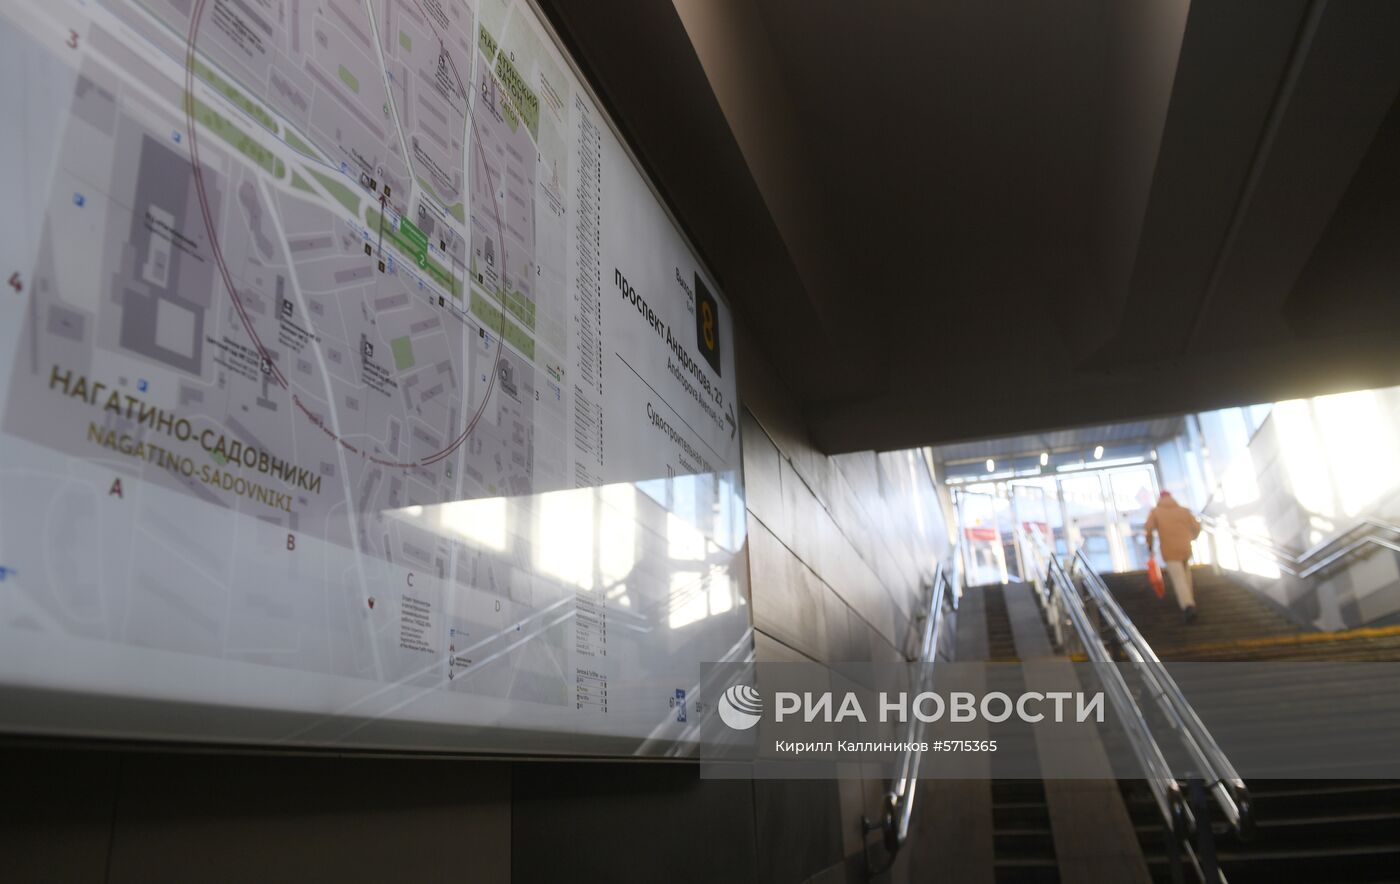 Станция метро "Коломенская" после ремонта